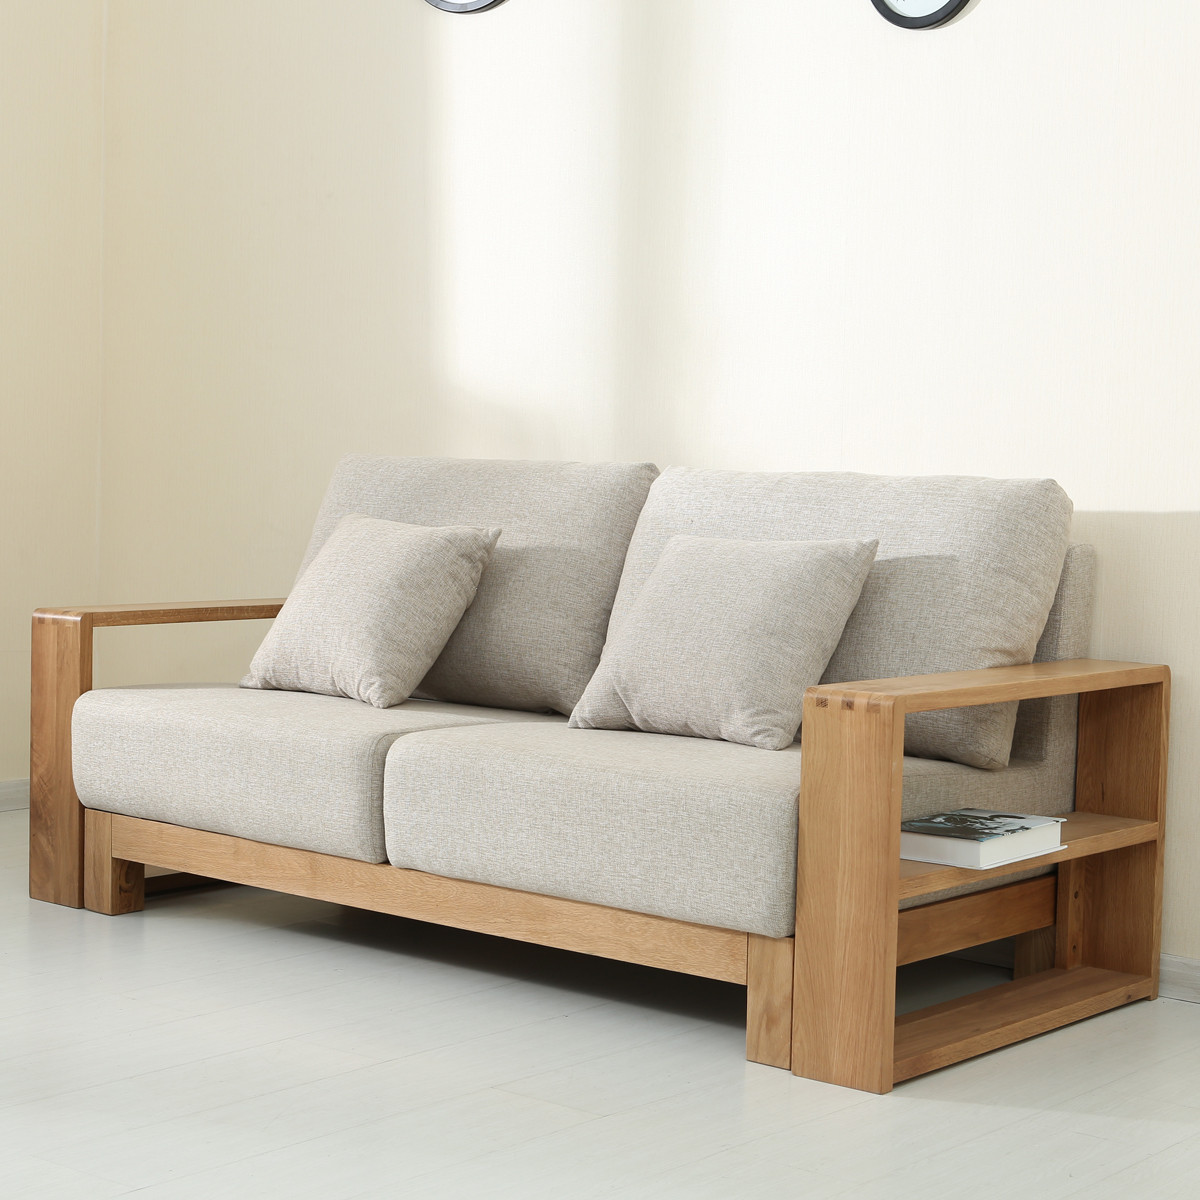 沙发组合现代简约小户型客厅家具转角木质沙发贵妃布艺沙发新款dz1120